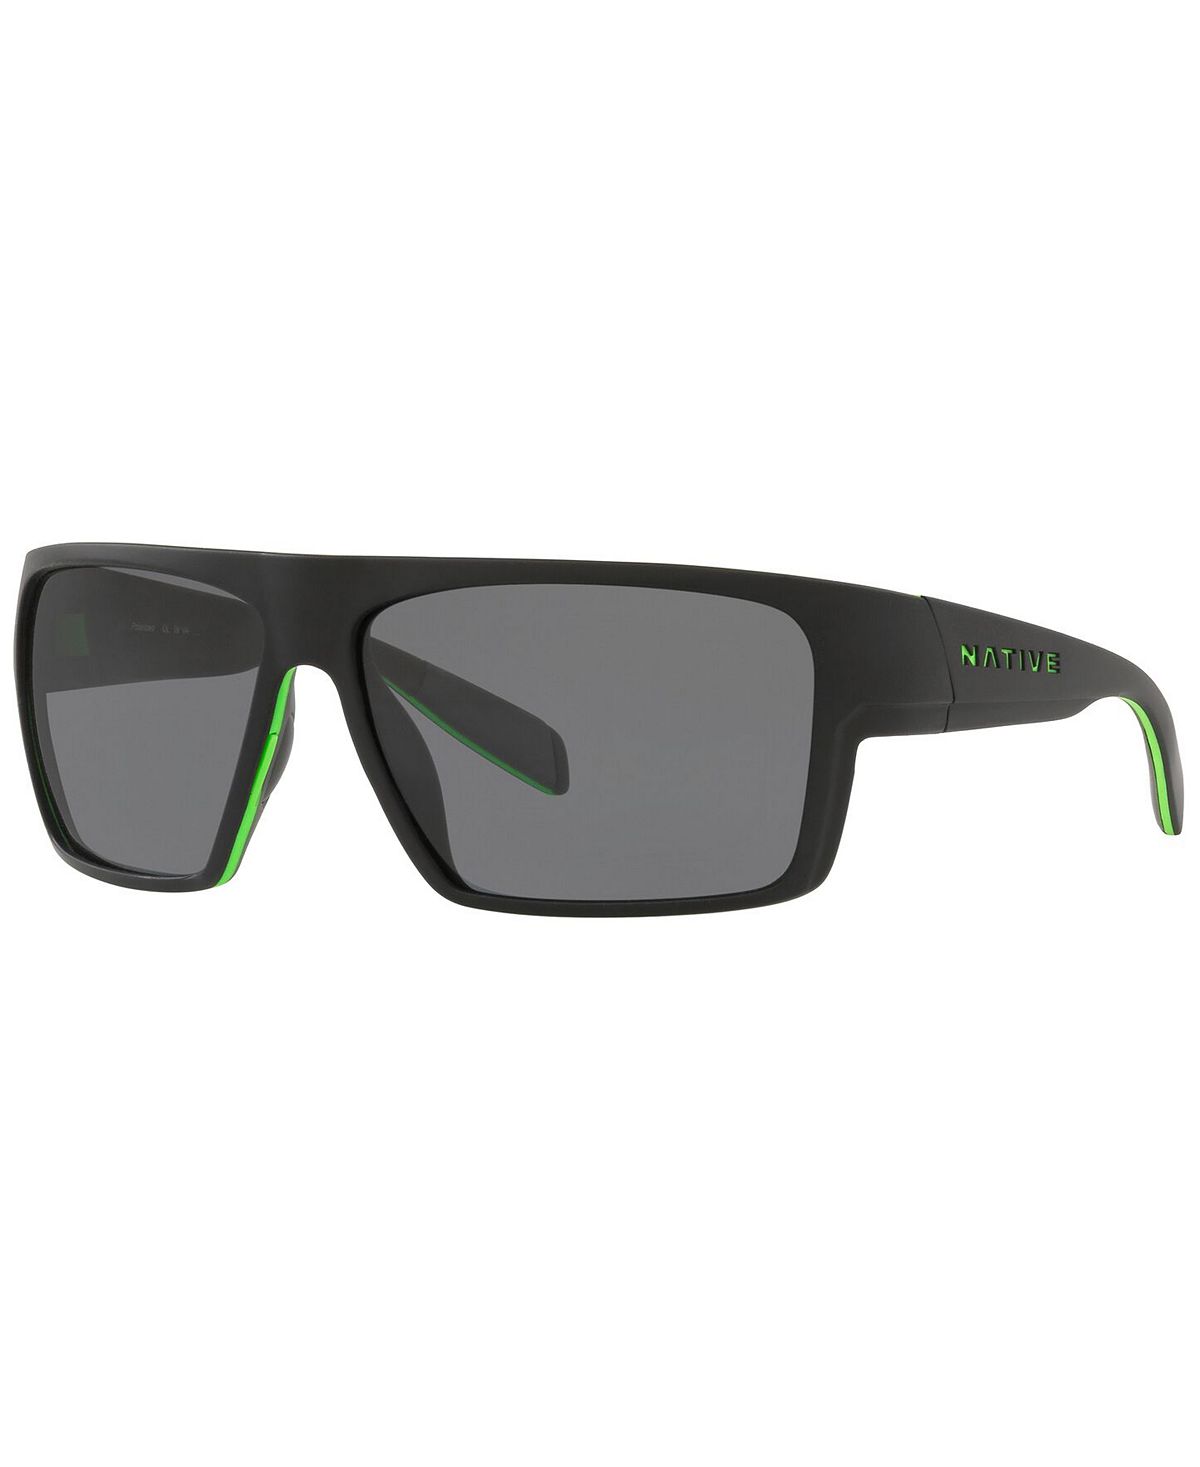 Мужские поляризованные солнцезащитные очки Native, XD9010 62 Native Eyewear кроссовки metric dc цвет black grey green